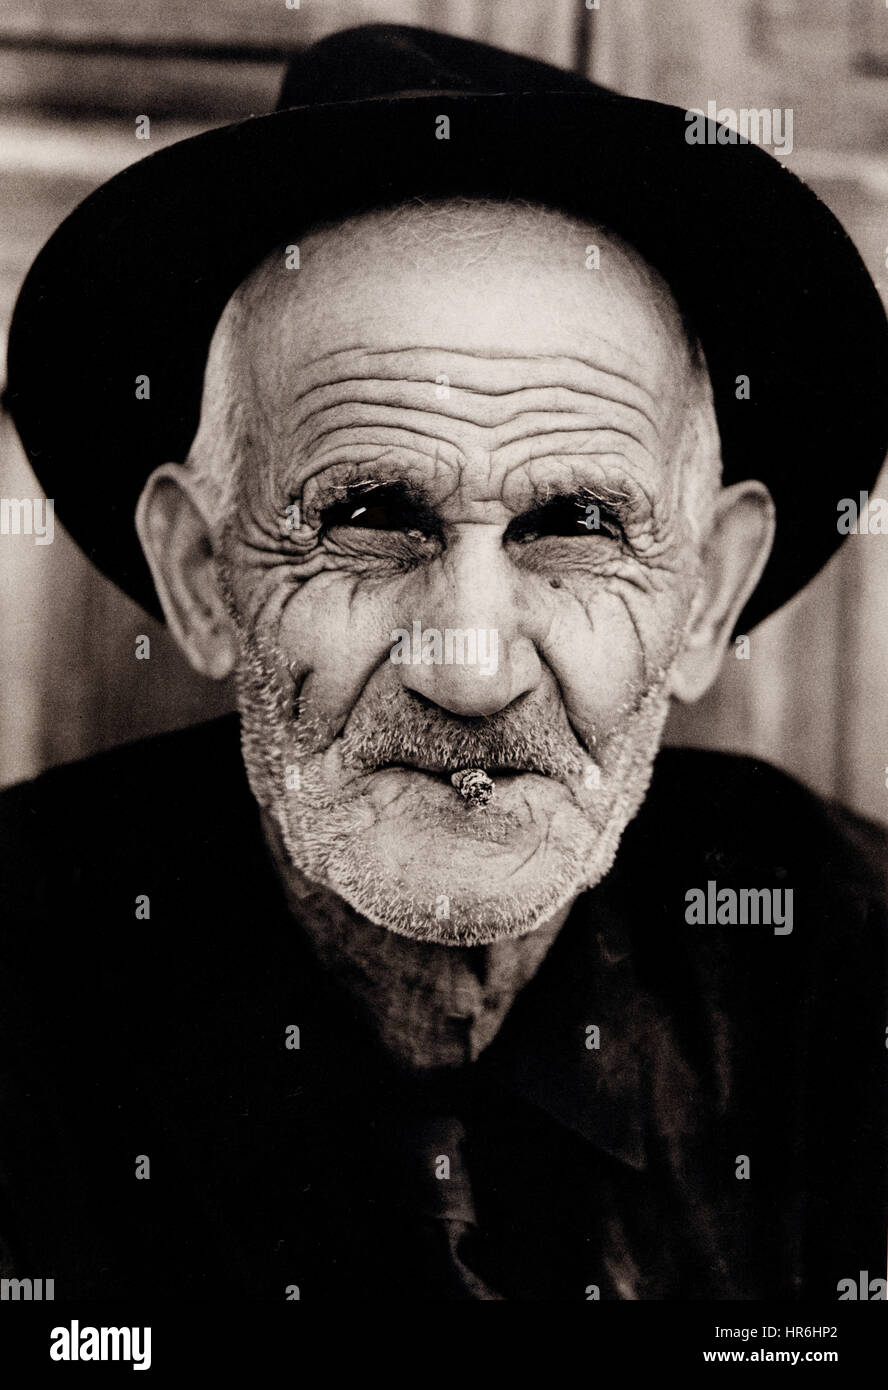 VIEUX VISAGE TAPÉ personnage de portrait B+W soleil tapé temps passé étude de visage de gentleman âgé avec cigarillo portant un chapeau à Vegueta, Las Palmas, îles Canaries Espagne Banque D'Images